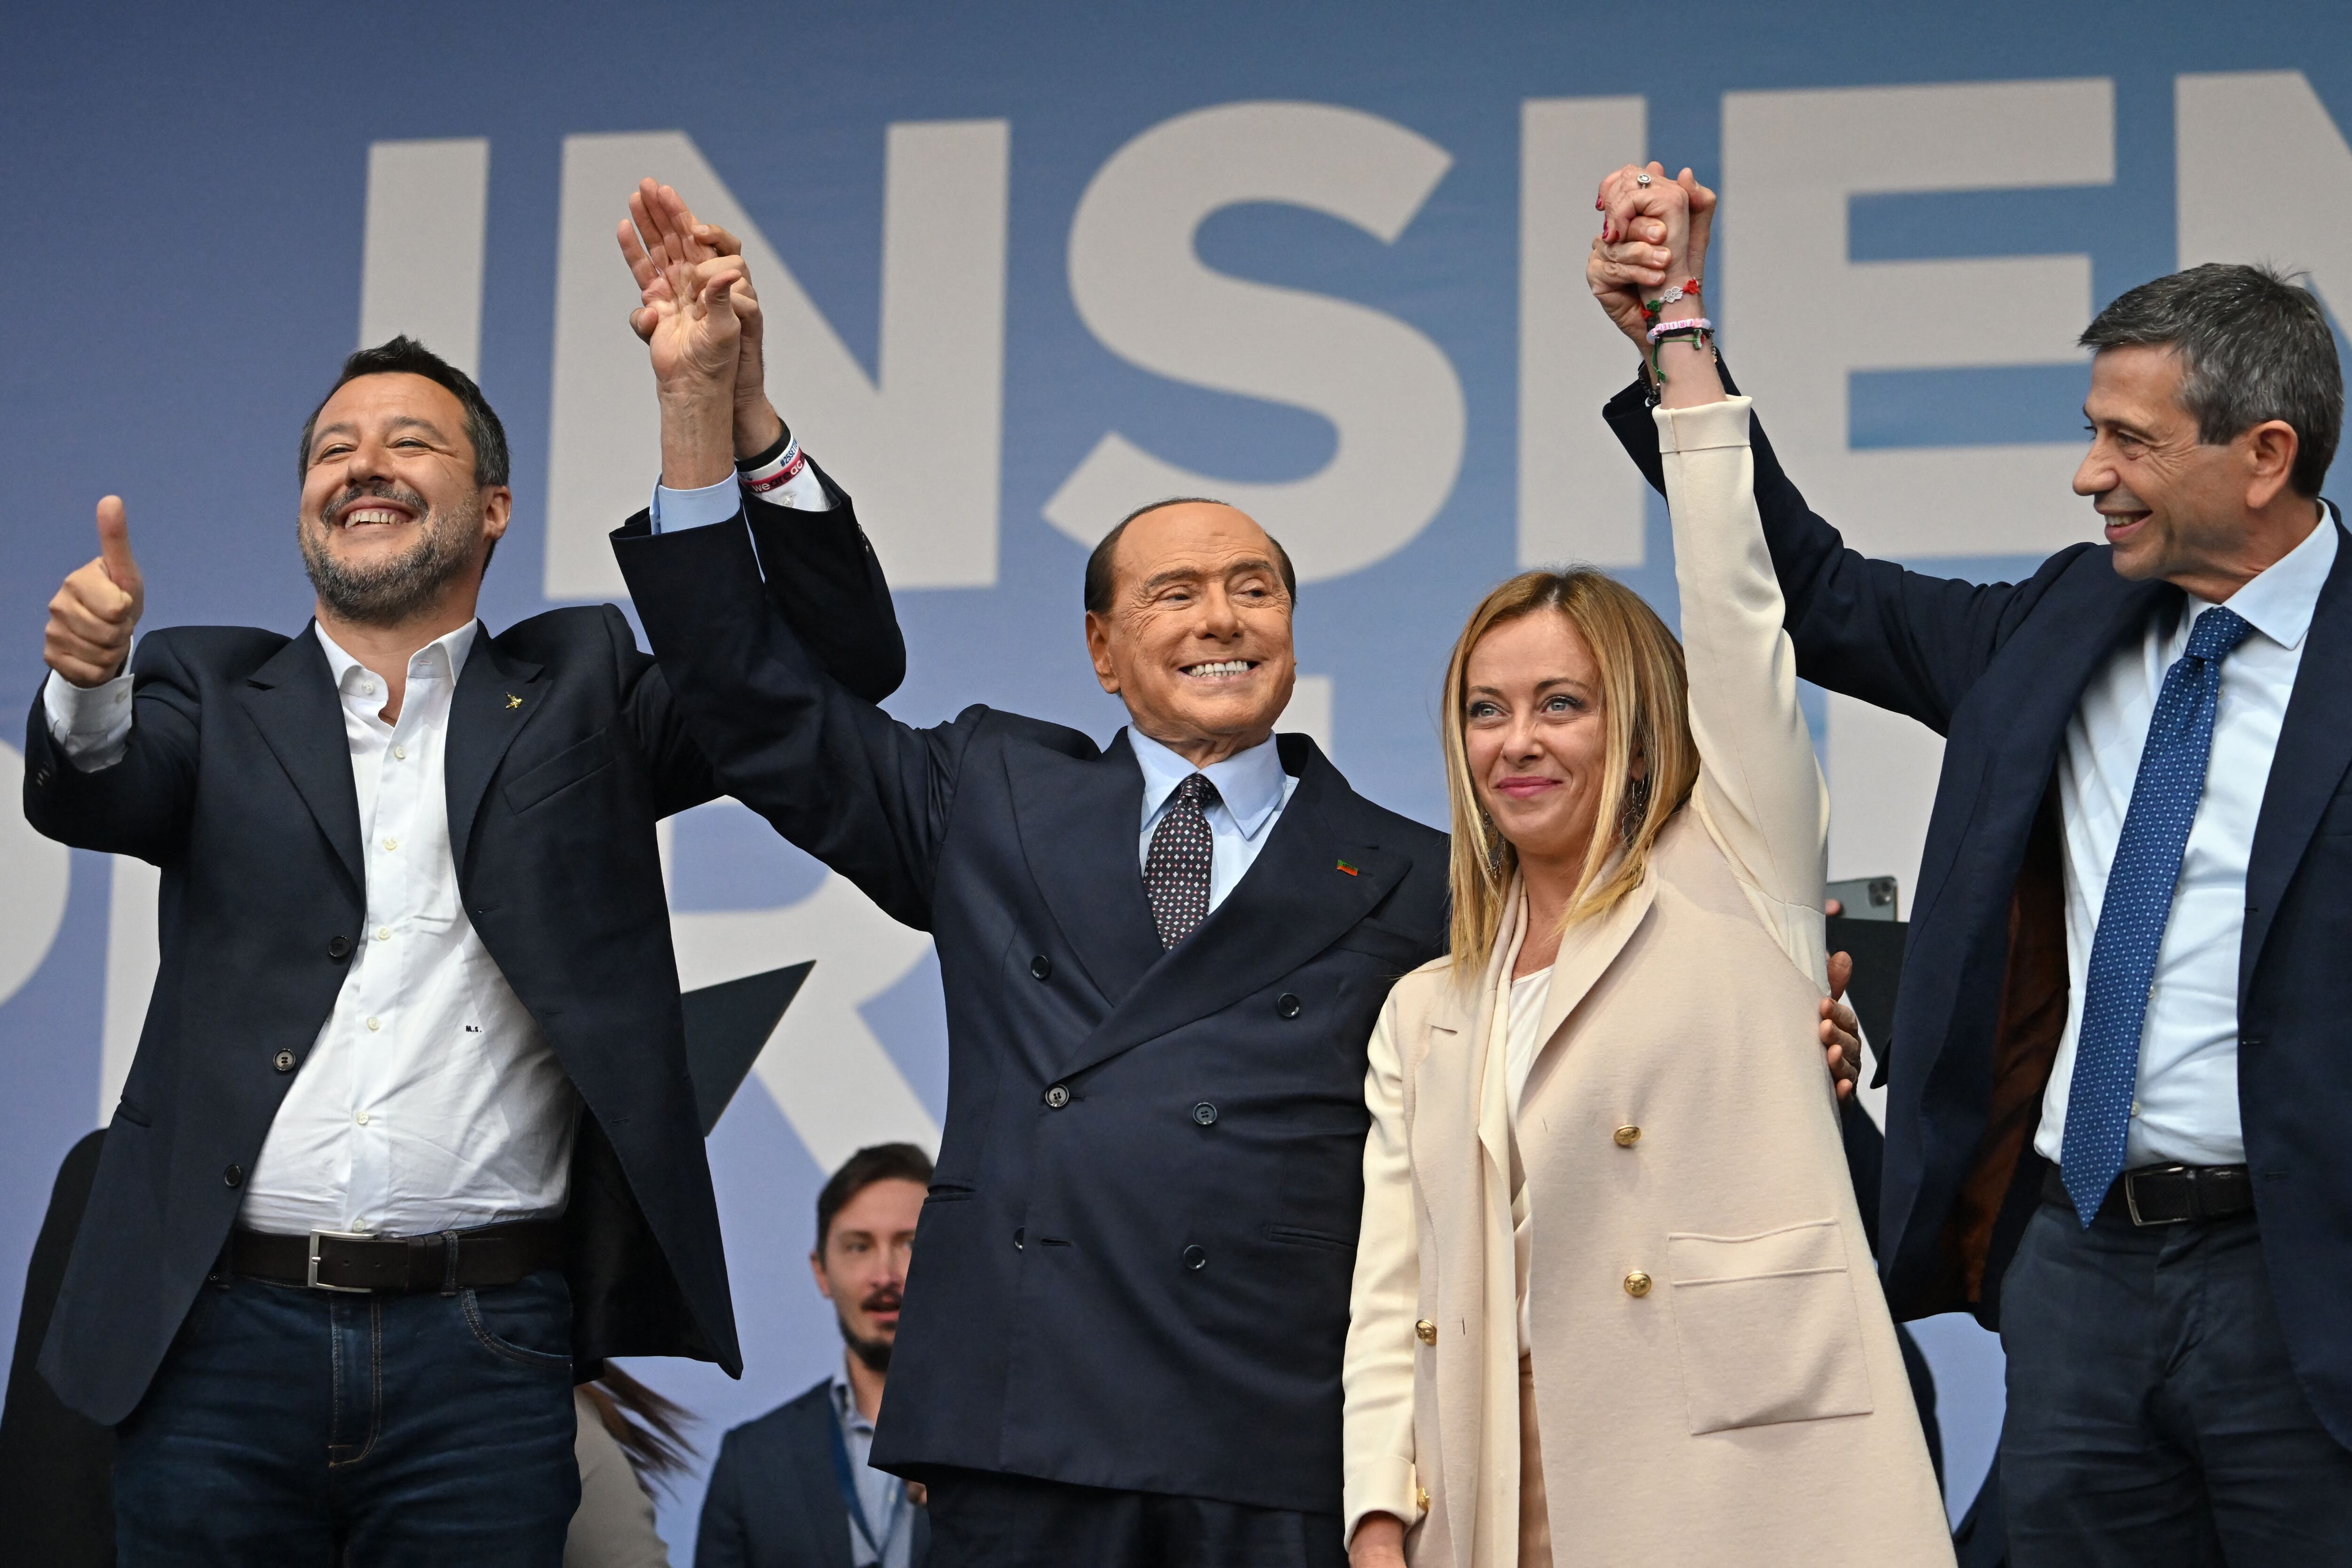 (De izquierda a derecha) el líder del partido italiano de extrema derecha Lega (Liga) Matteo Salvini, el líder de Forza Italia Silvio Berlusconi, el líder del partido italiano de extrema derecha "Fratelli d'Italia" (Hermanos de Italia) Giorgia Meloni y el centro italiano -el legislador de derecha Maurizio Lupi se para en el escenario el 22 de septiembre de 2022 durante un mitin conjunto de la coalición italiana.